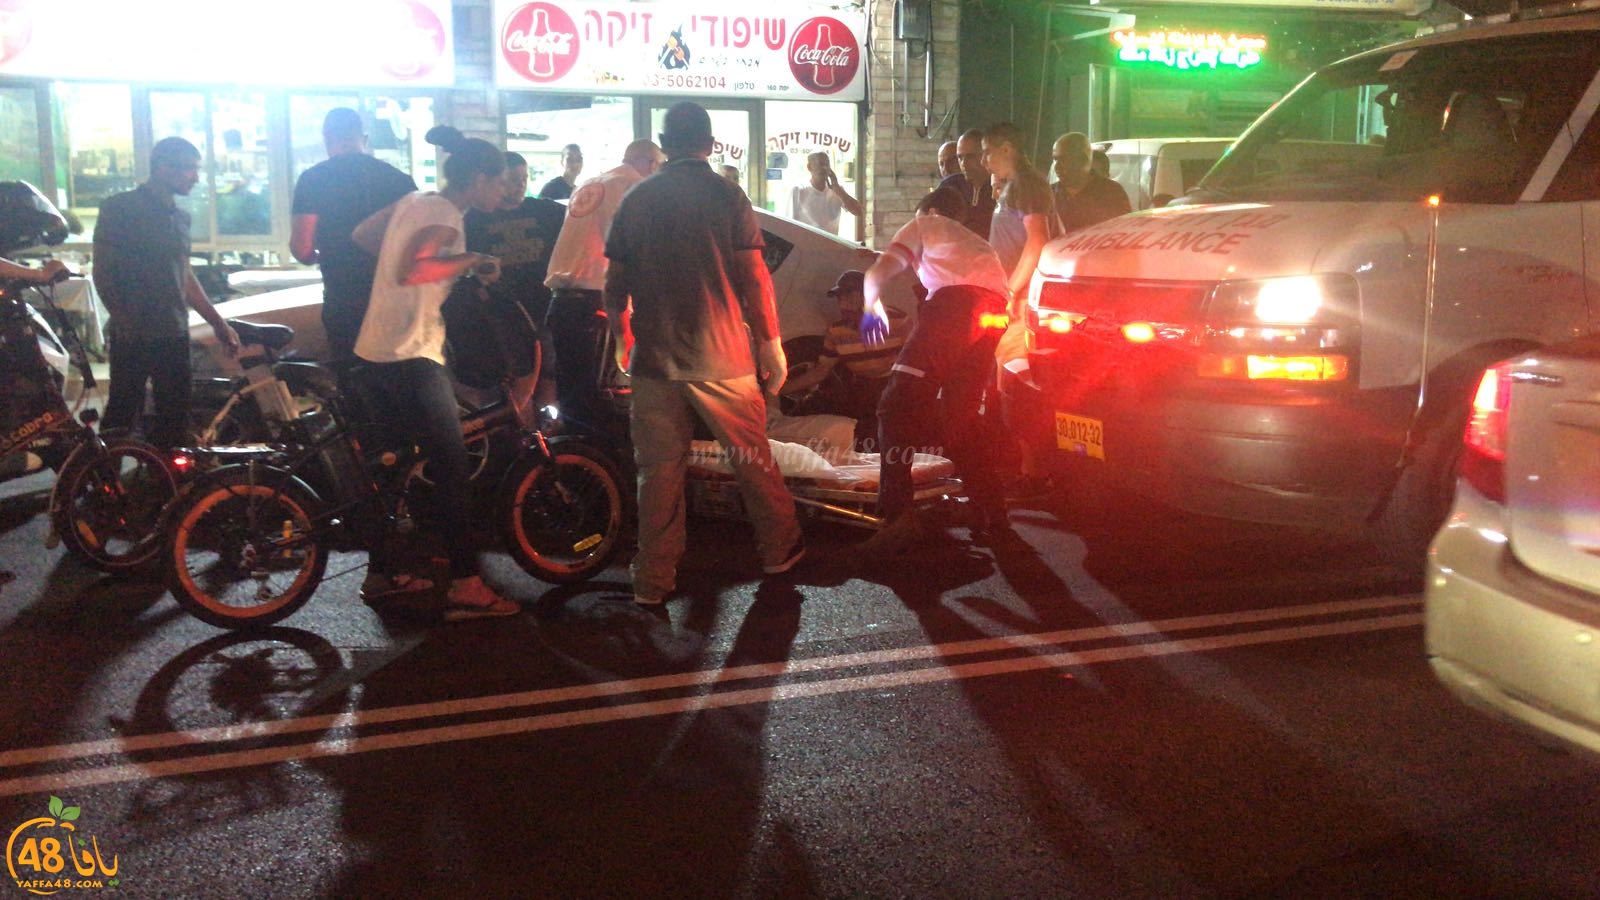  بالصور: اصابة متوسطة لمواطن بحادث دهس ضرب وهرب بيافا